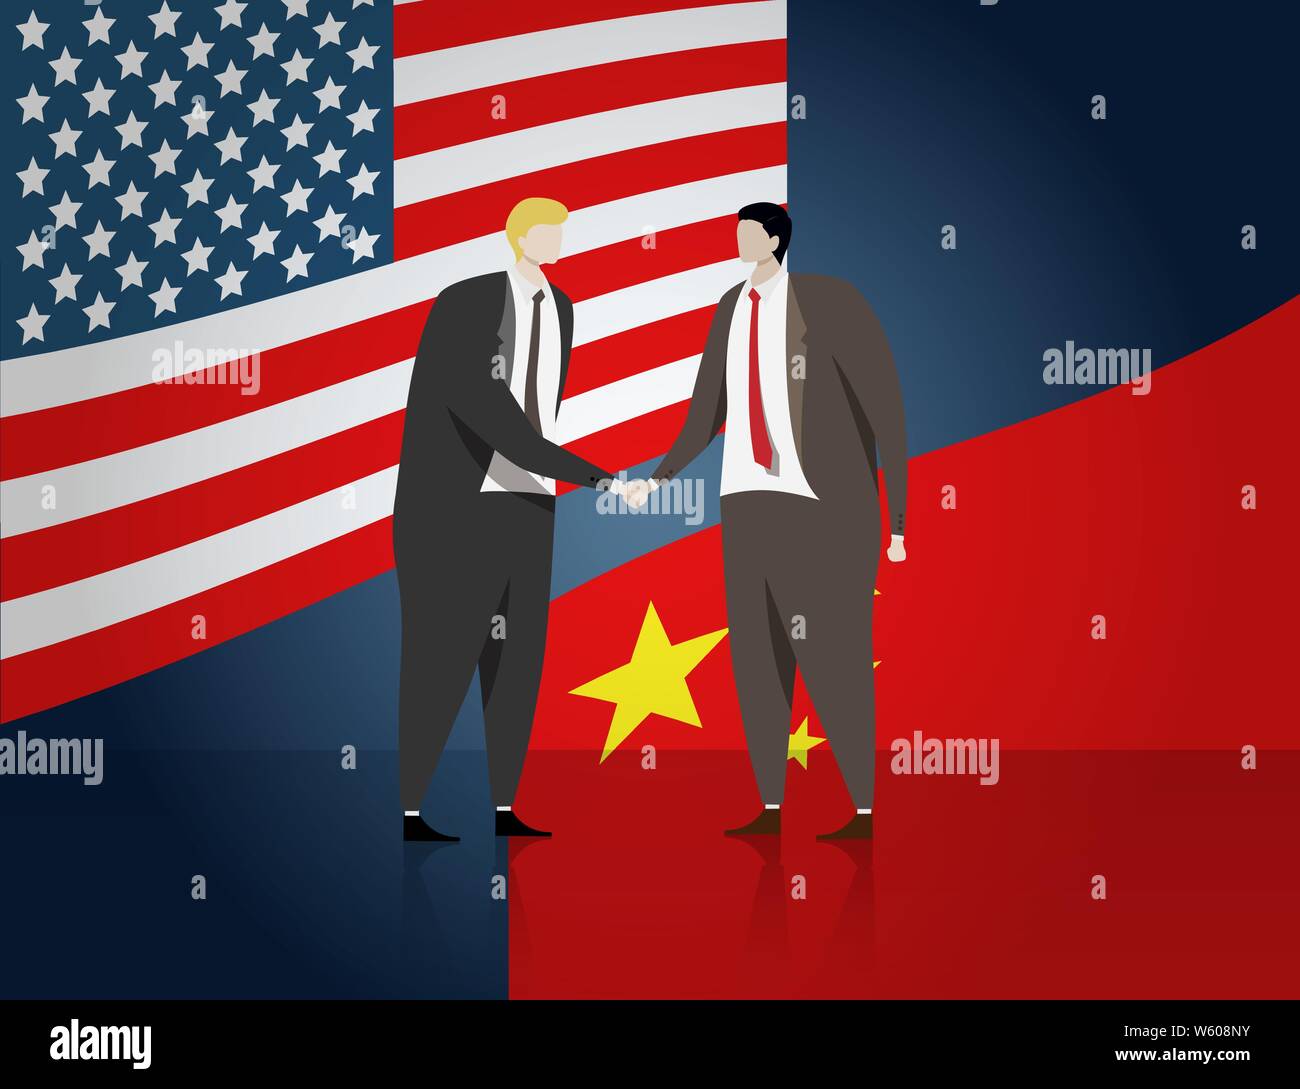 La gente di affari agitando la mano per fare un affare di business, bandiera di Stati Uniti e Cina in background. Stati Uniti e Cina i rapporti politici bilaterali e coopera Illustrazione Vettoriale